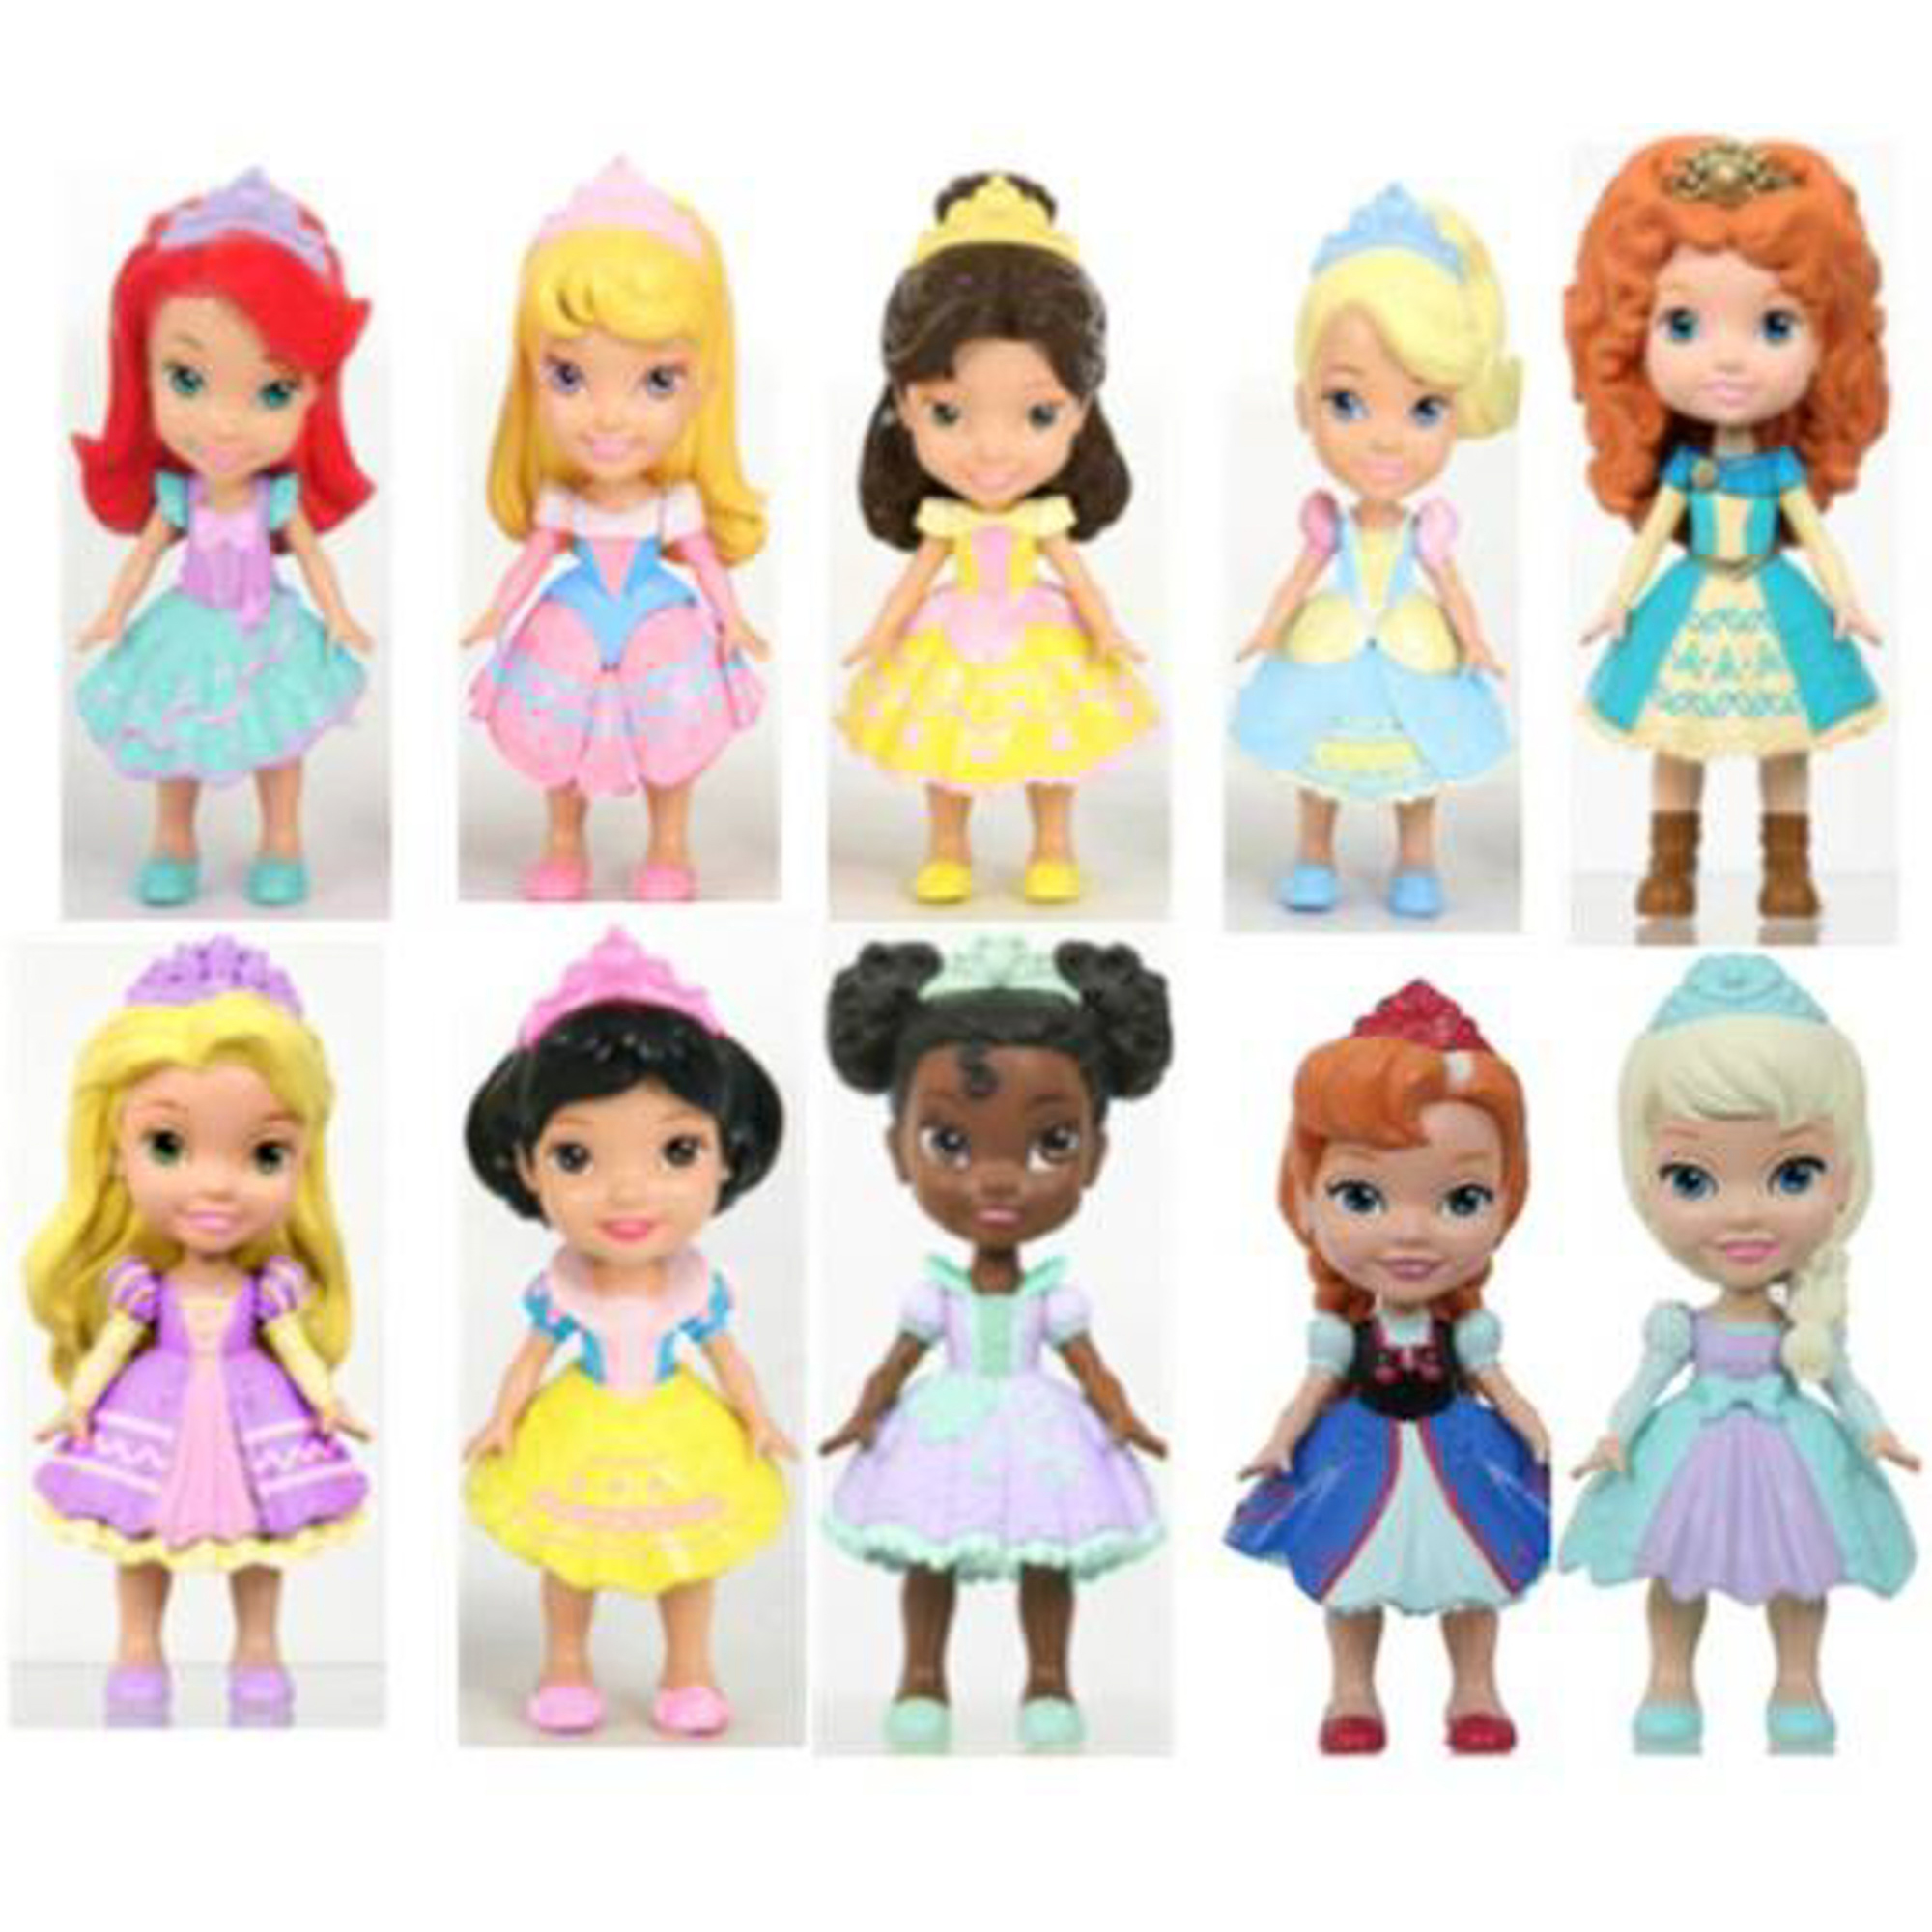 Принцесса малышка s класса слишком. Кукла принцесса Дисней 7.5 см. Кукла 13 см принцессы Дисней ШБ. Disney Princess 758960 принцессы Дисней. Кукла 15 см принцессы Дисней малышка с питомцем, 754910 75491.